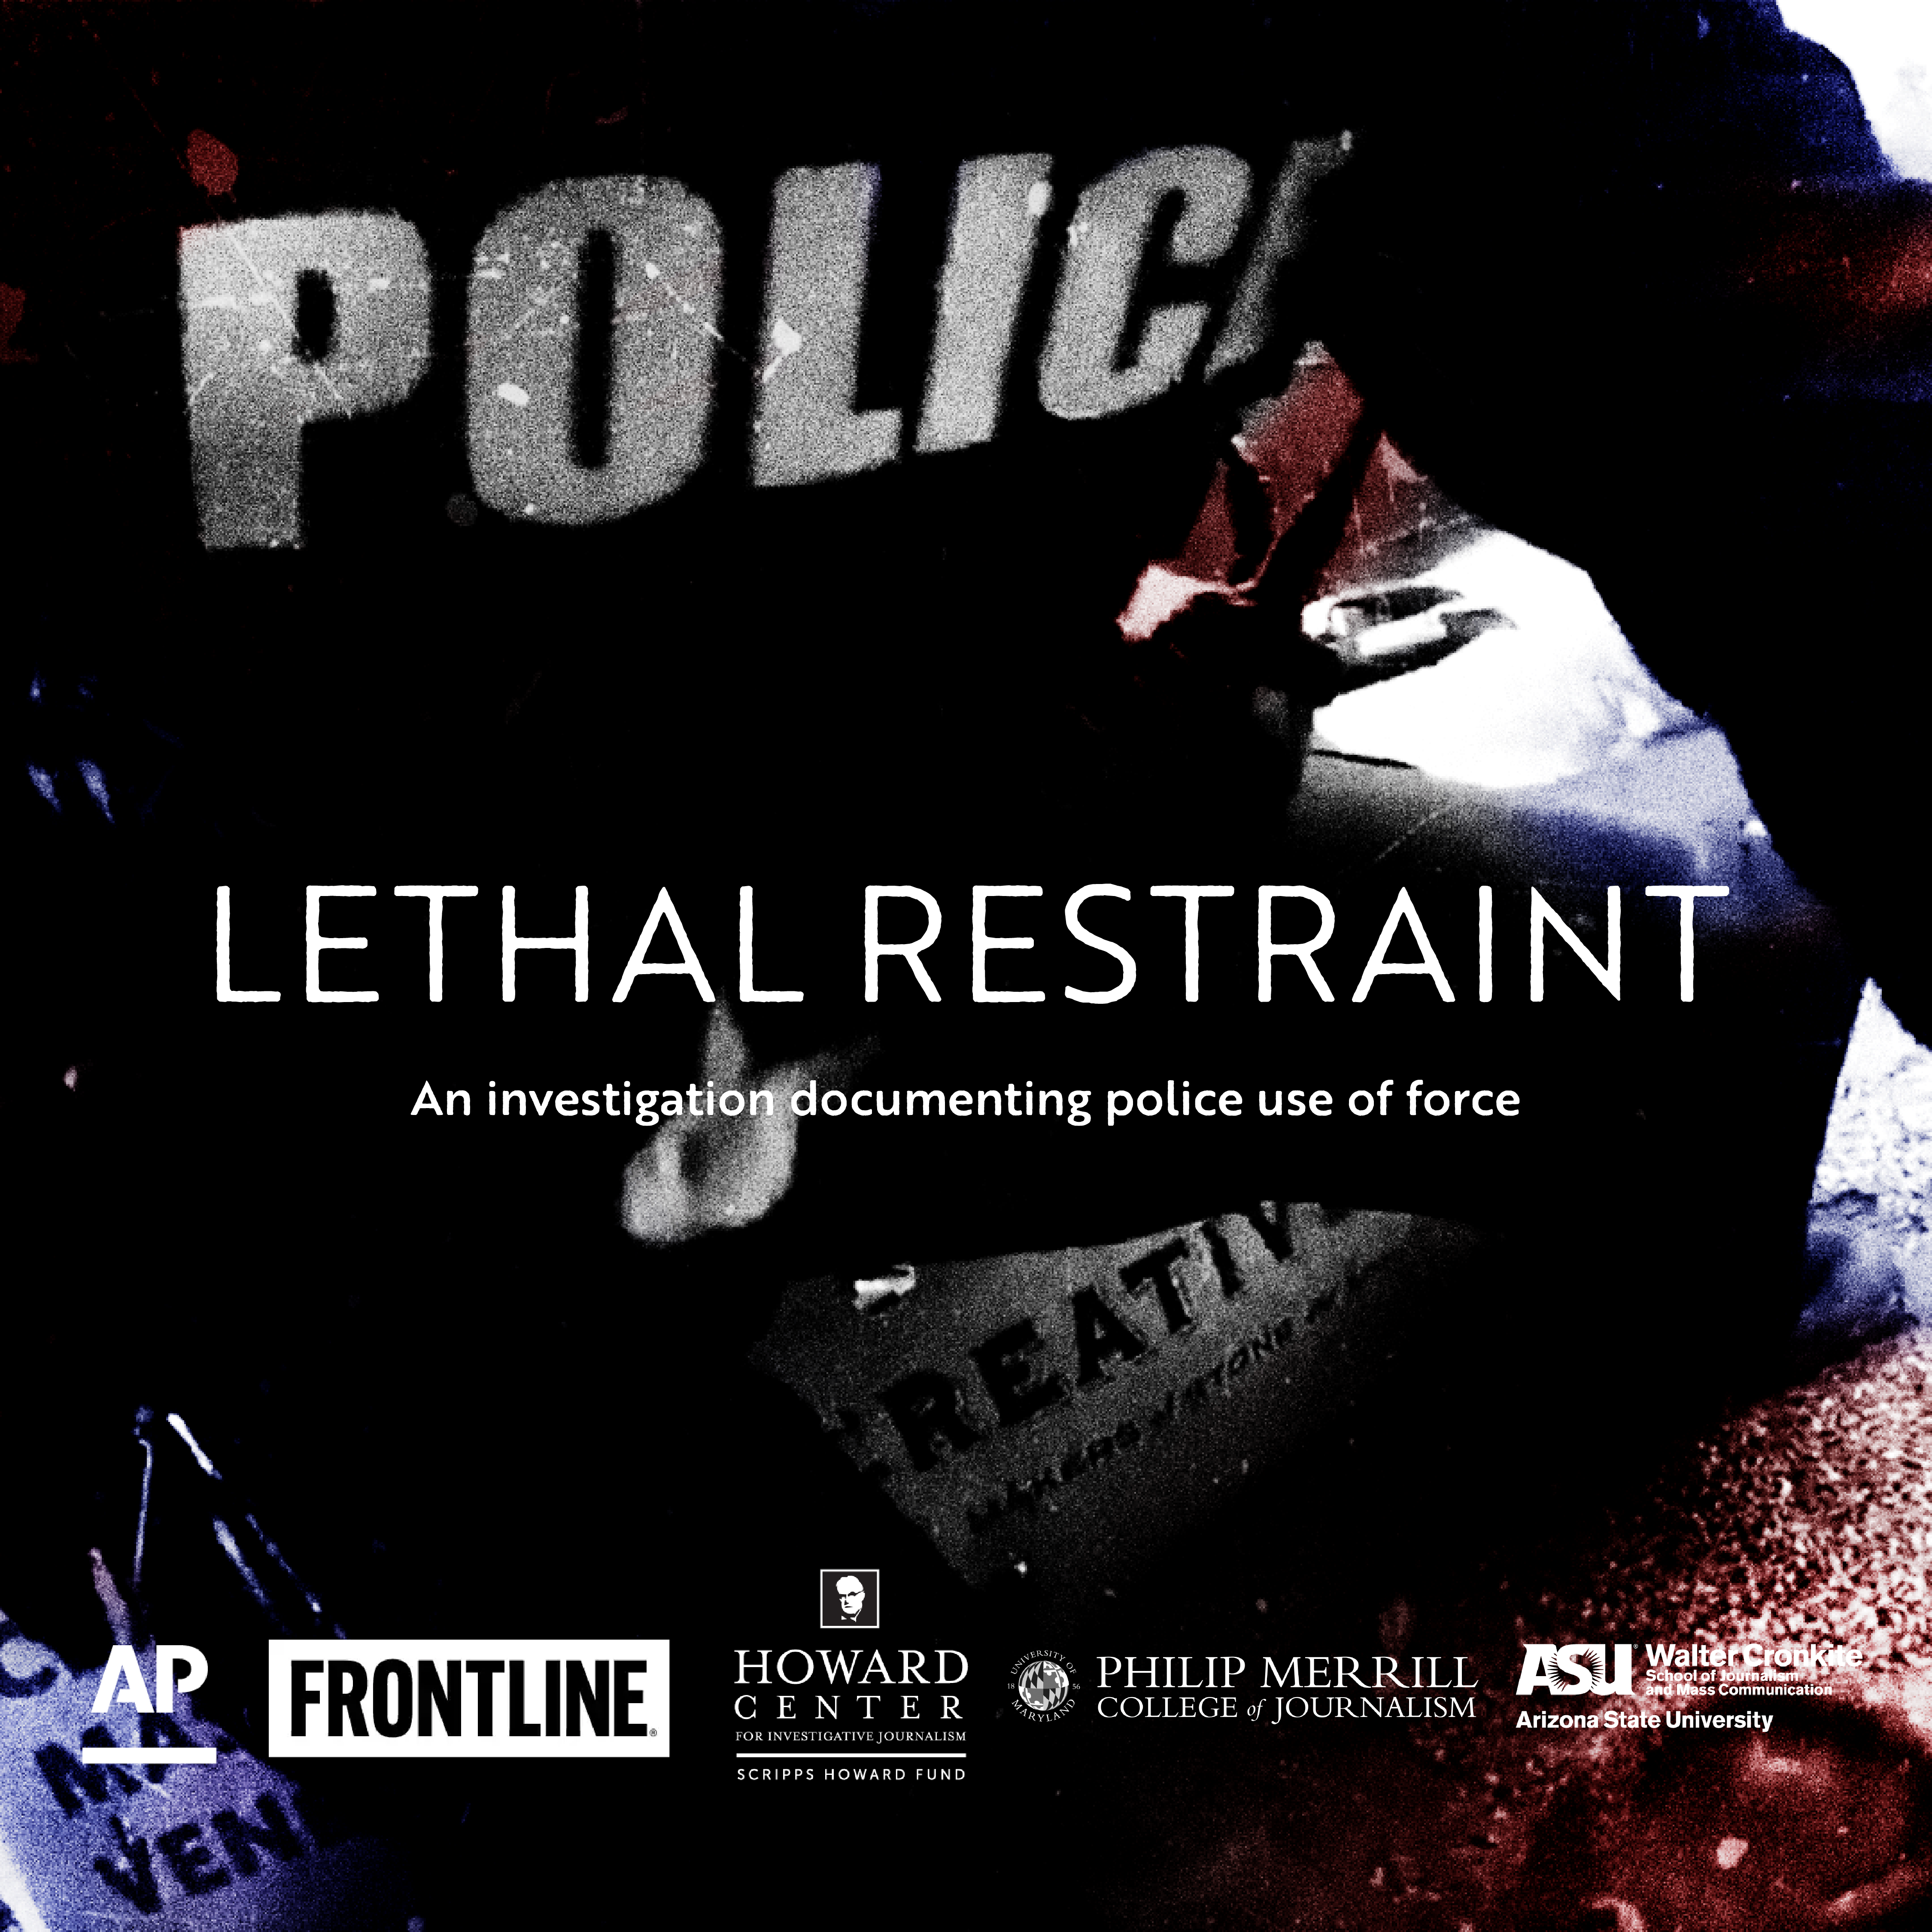 Promo image for "Lethal Restraint"